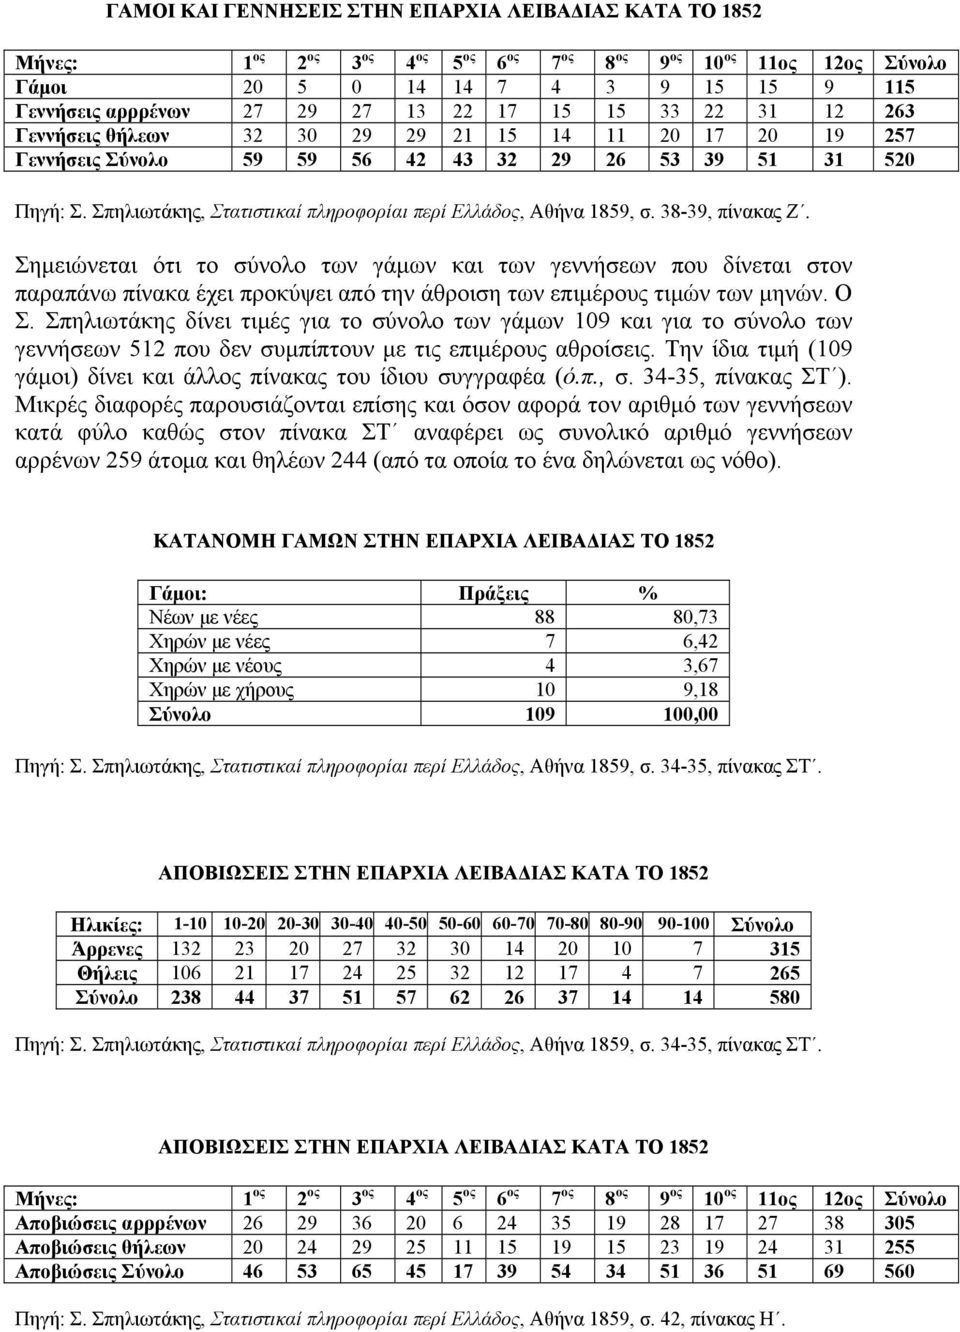 Σπηλιωτάκης, Στατιστικαί πληροφορίαι περί Ελλάδος, Αθήνα 1859, σ. 38-39, πίνακας Ζ.